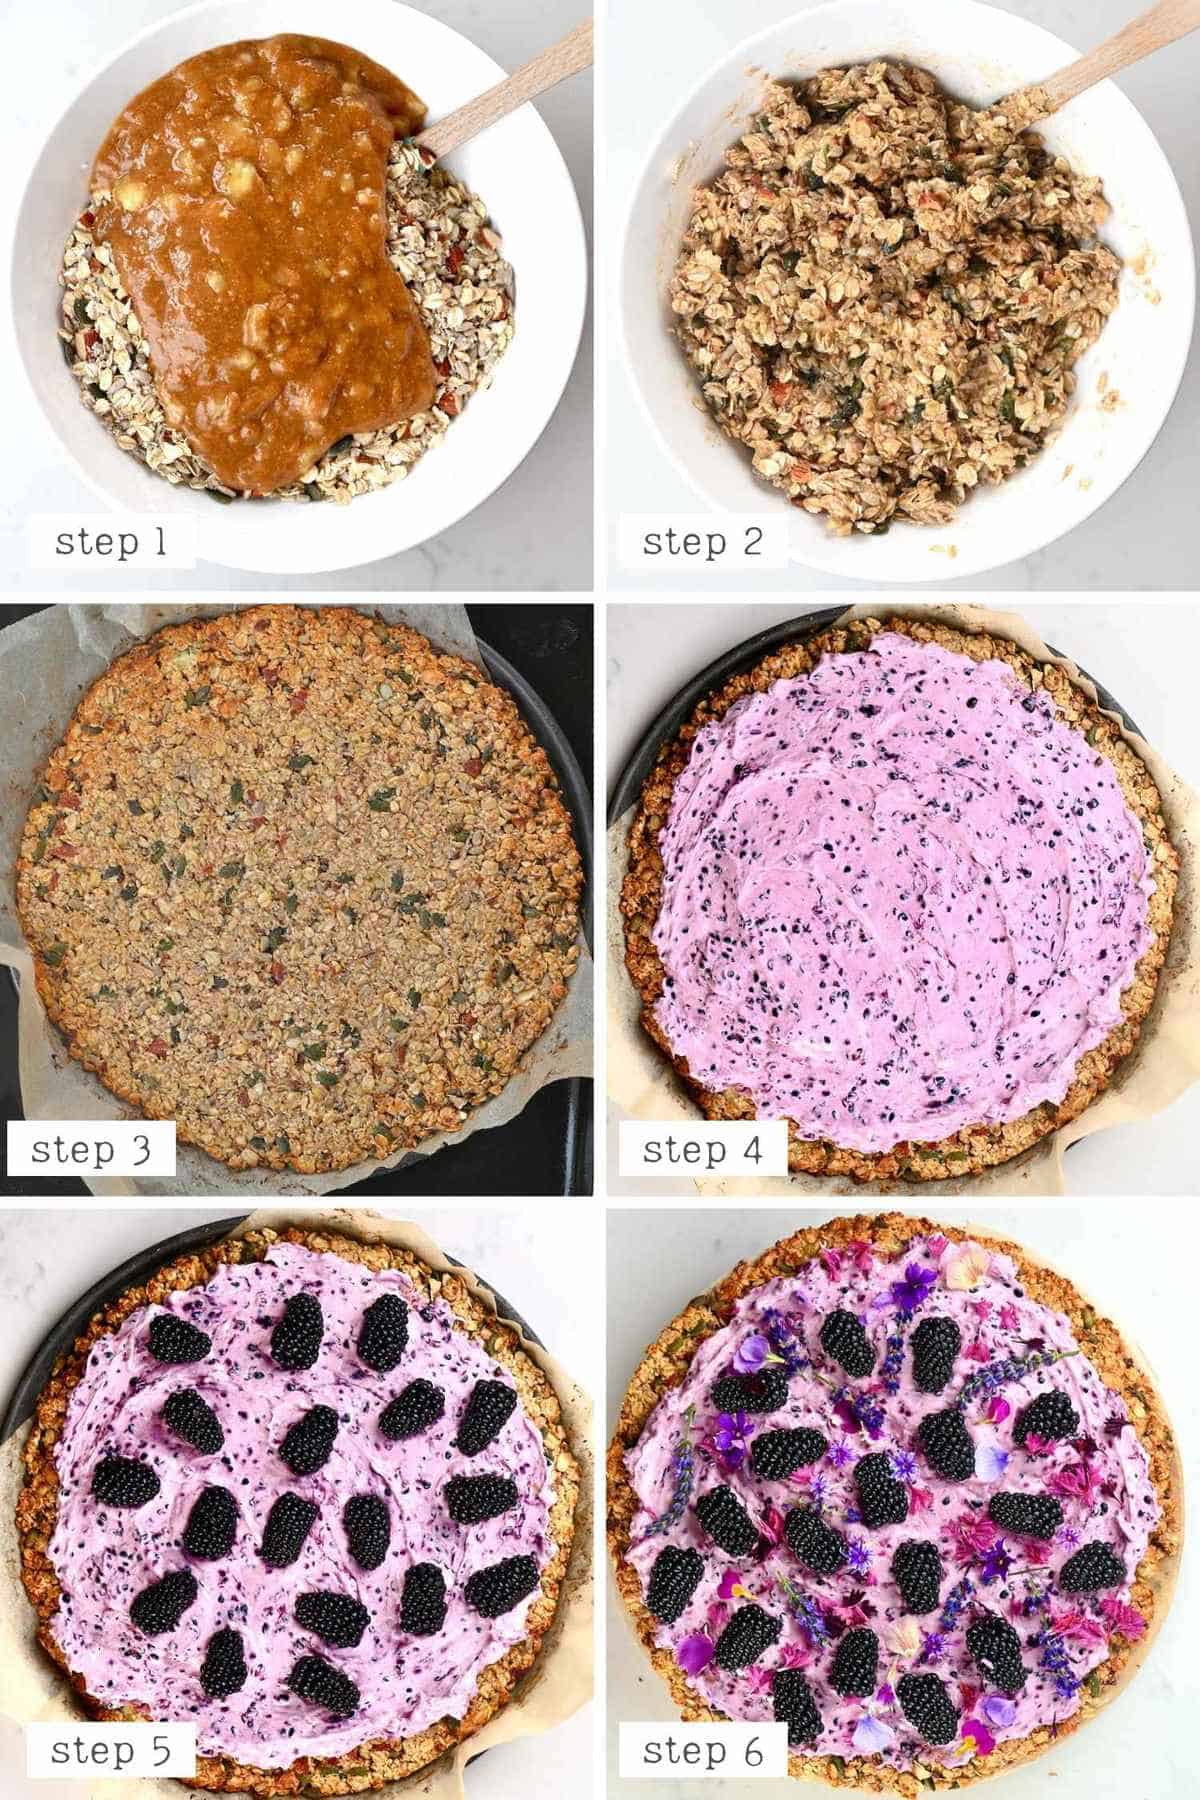 steps for assembling the blackberry breakfast pizza